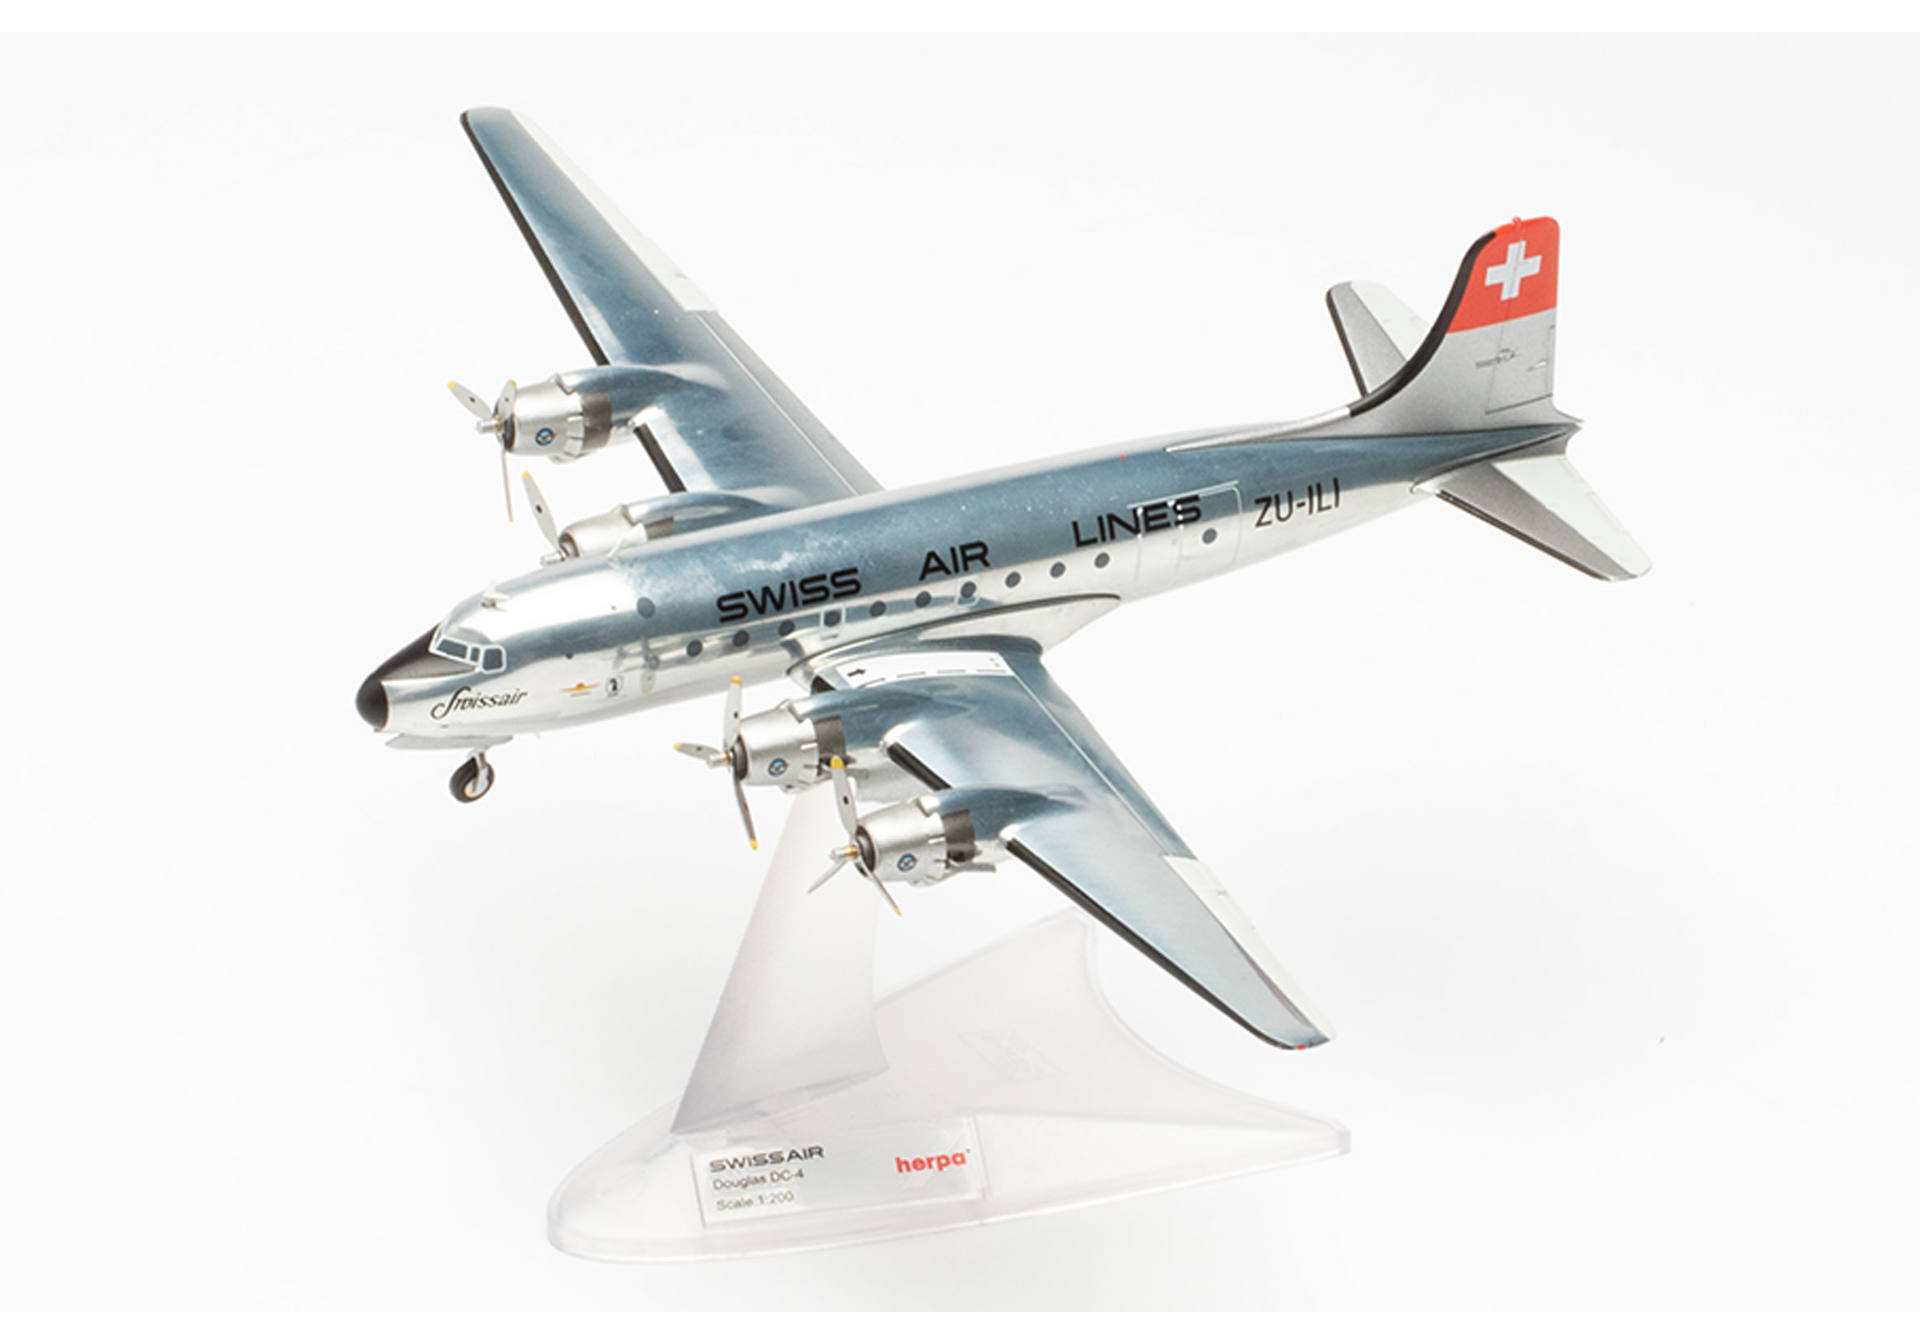 Swissair Douglas DC-4 – ZU-ILI